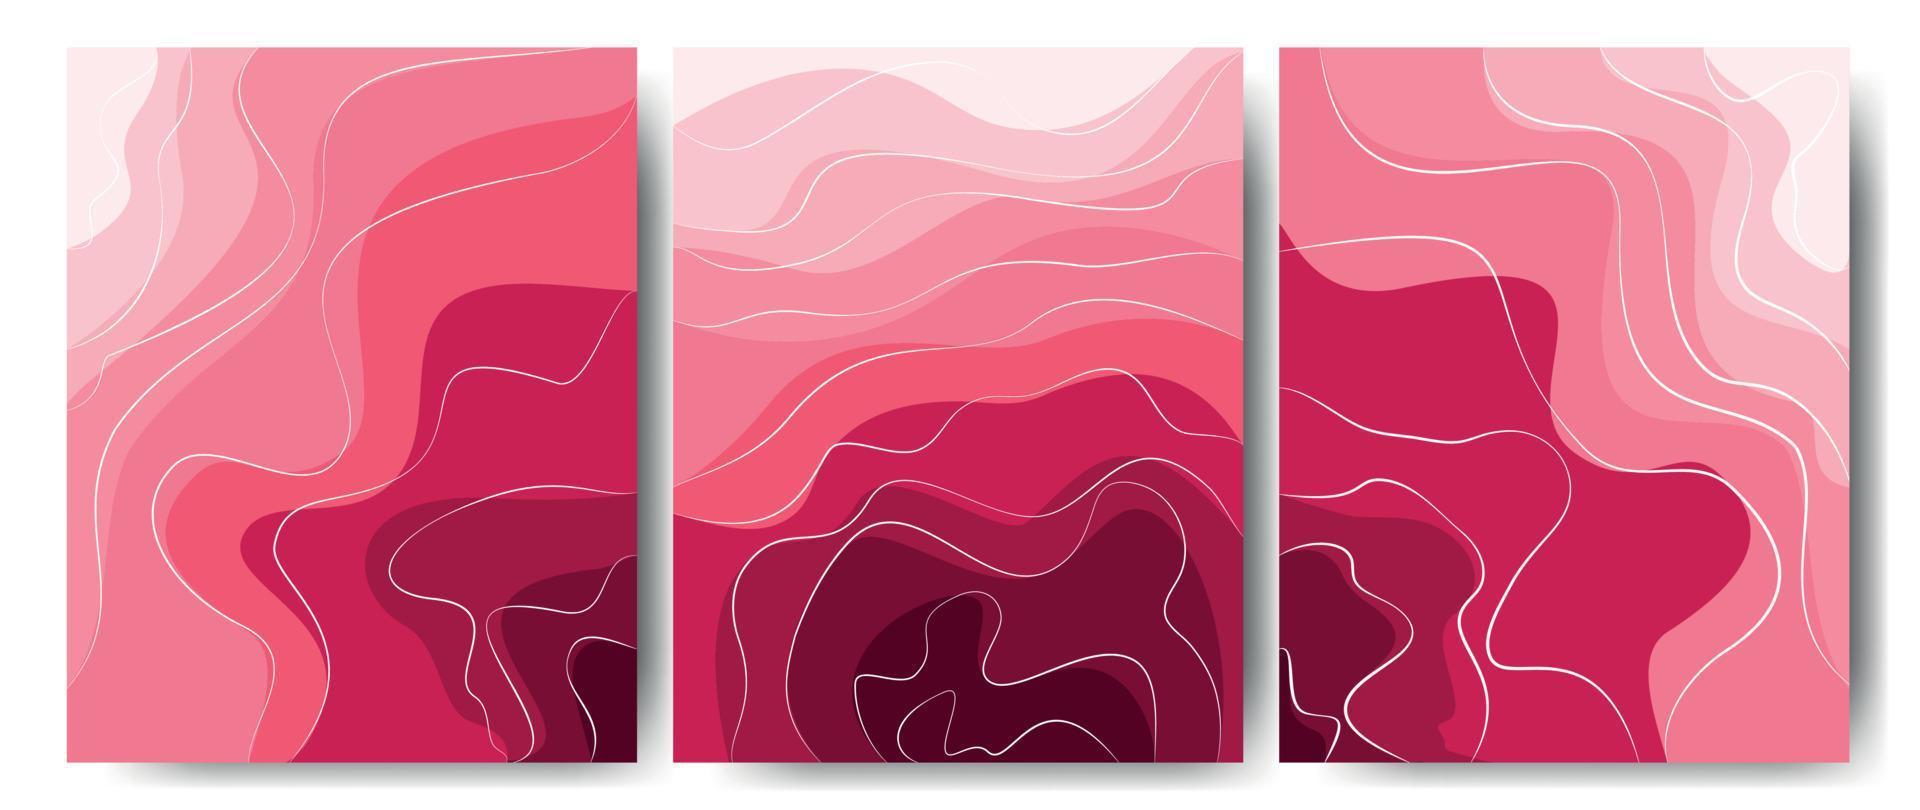 elegant bakgrund med våglinje vita element på rosa nyans. 3D-papper klippt. vektor illustration för design. en fantastisk ros.